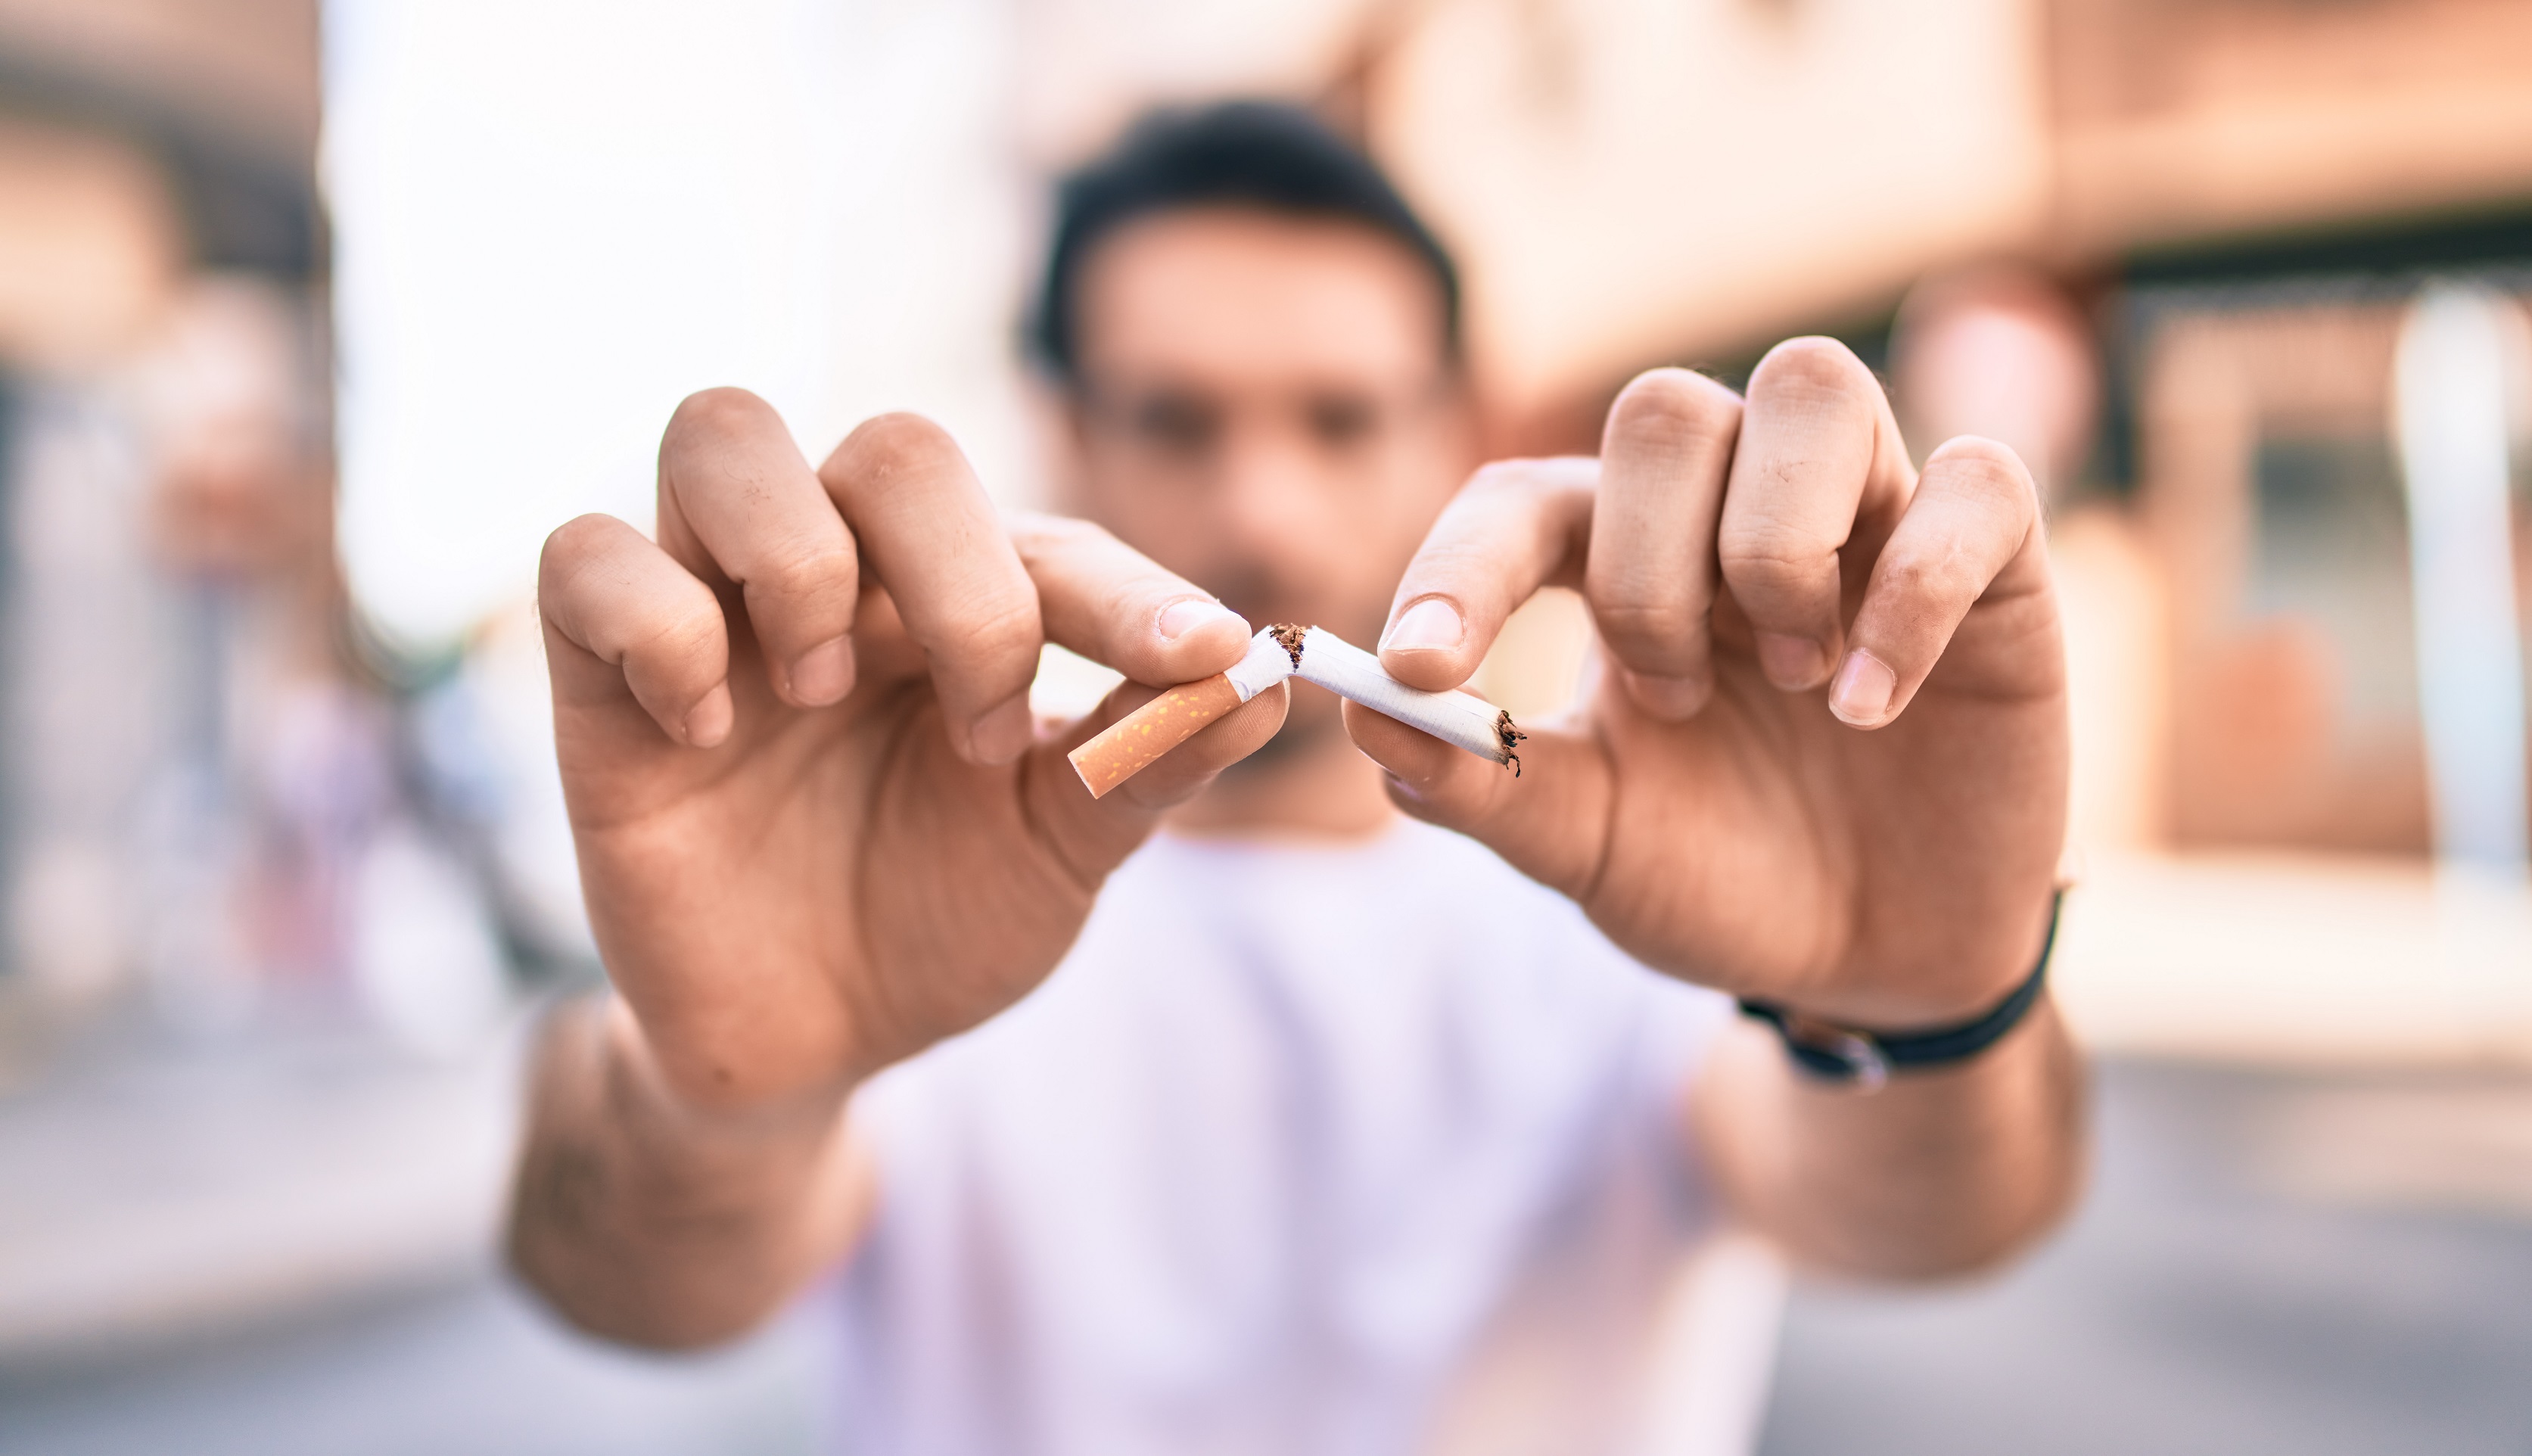 Les politiques mises en place dans de nombreux pays pour faire baisser le tabagisme sont-elles efficaces ? © Krakenimages.com, Shutterstock